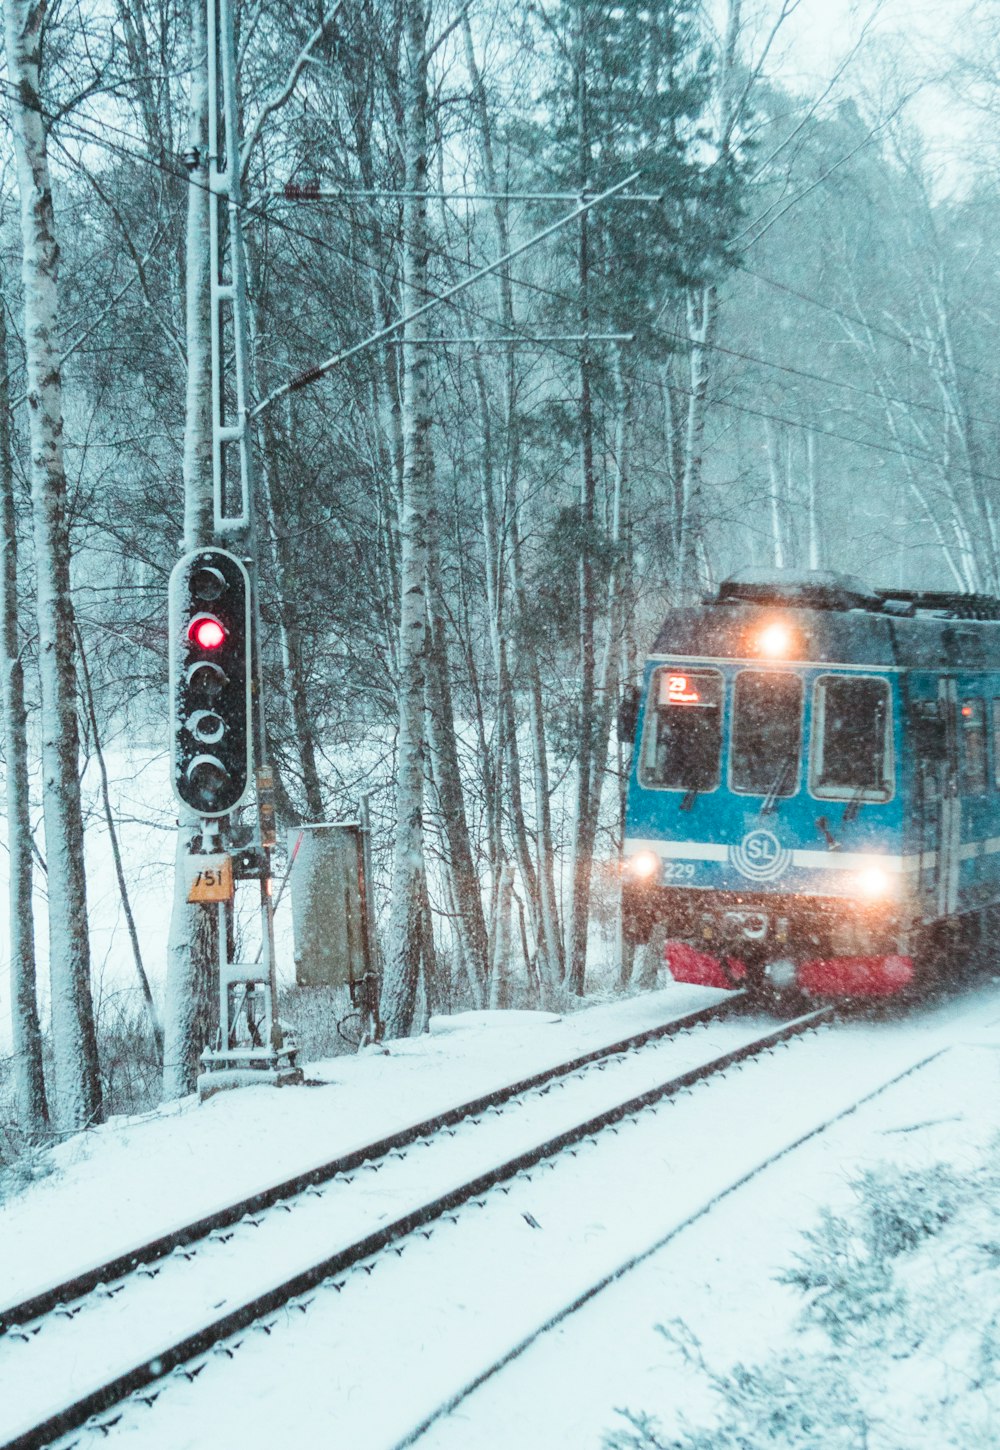 Tren azul y rojo en las vías del tren rodeado de árboles durante el día